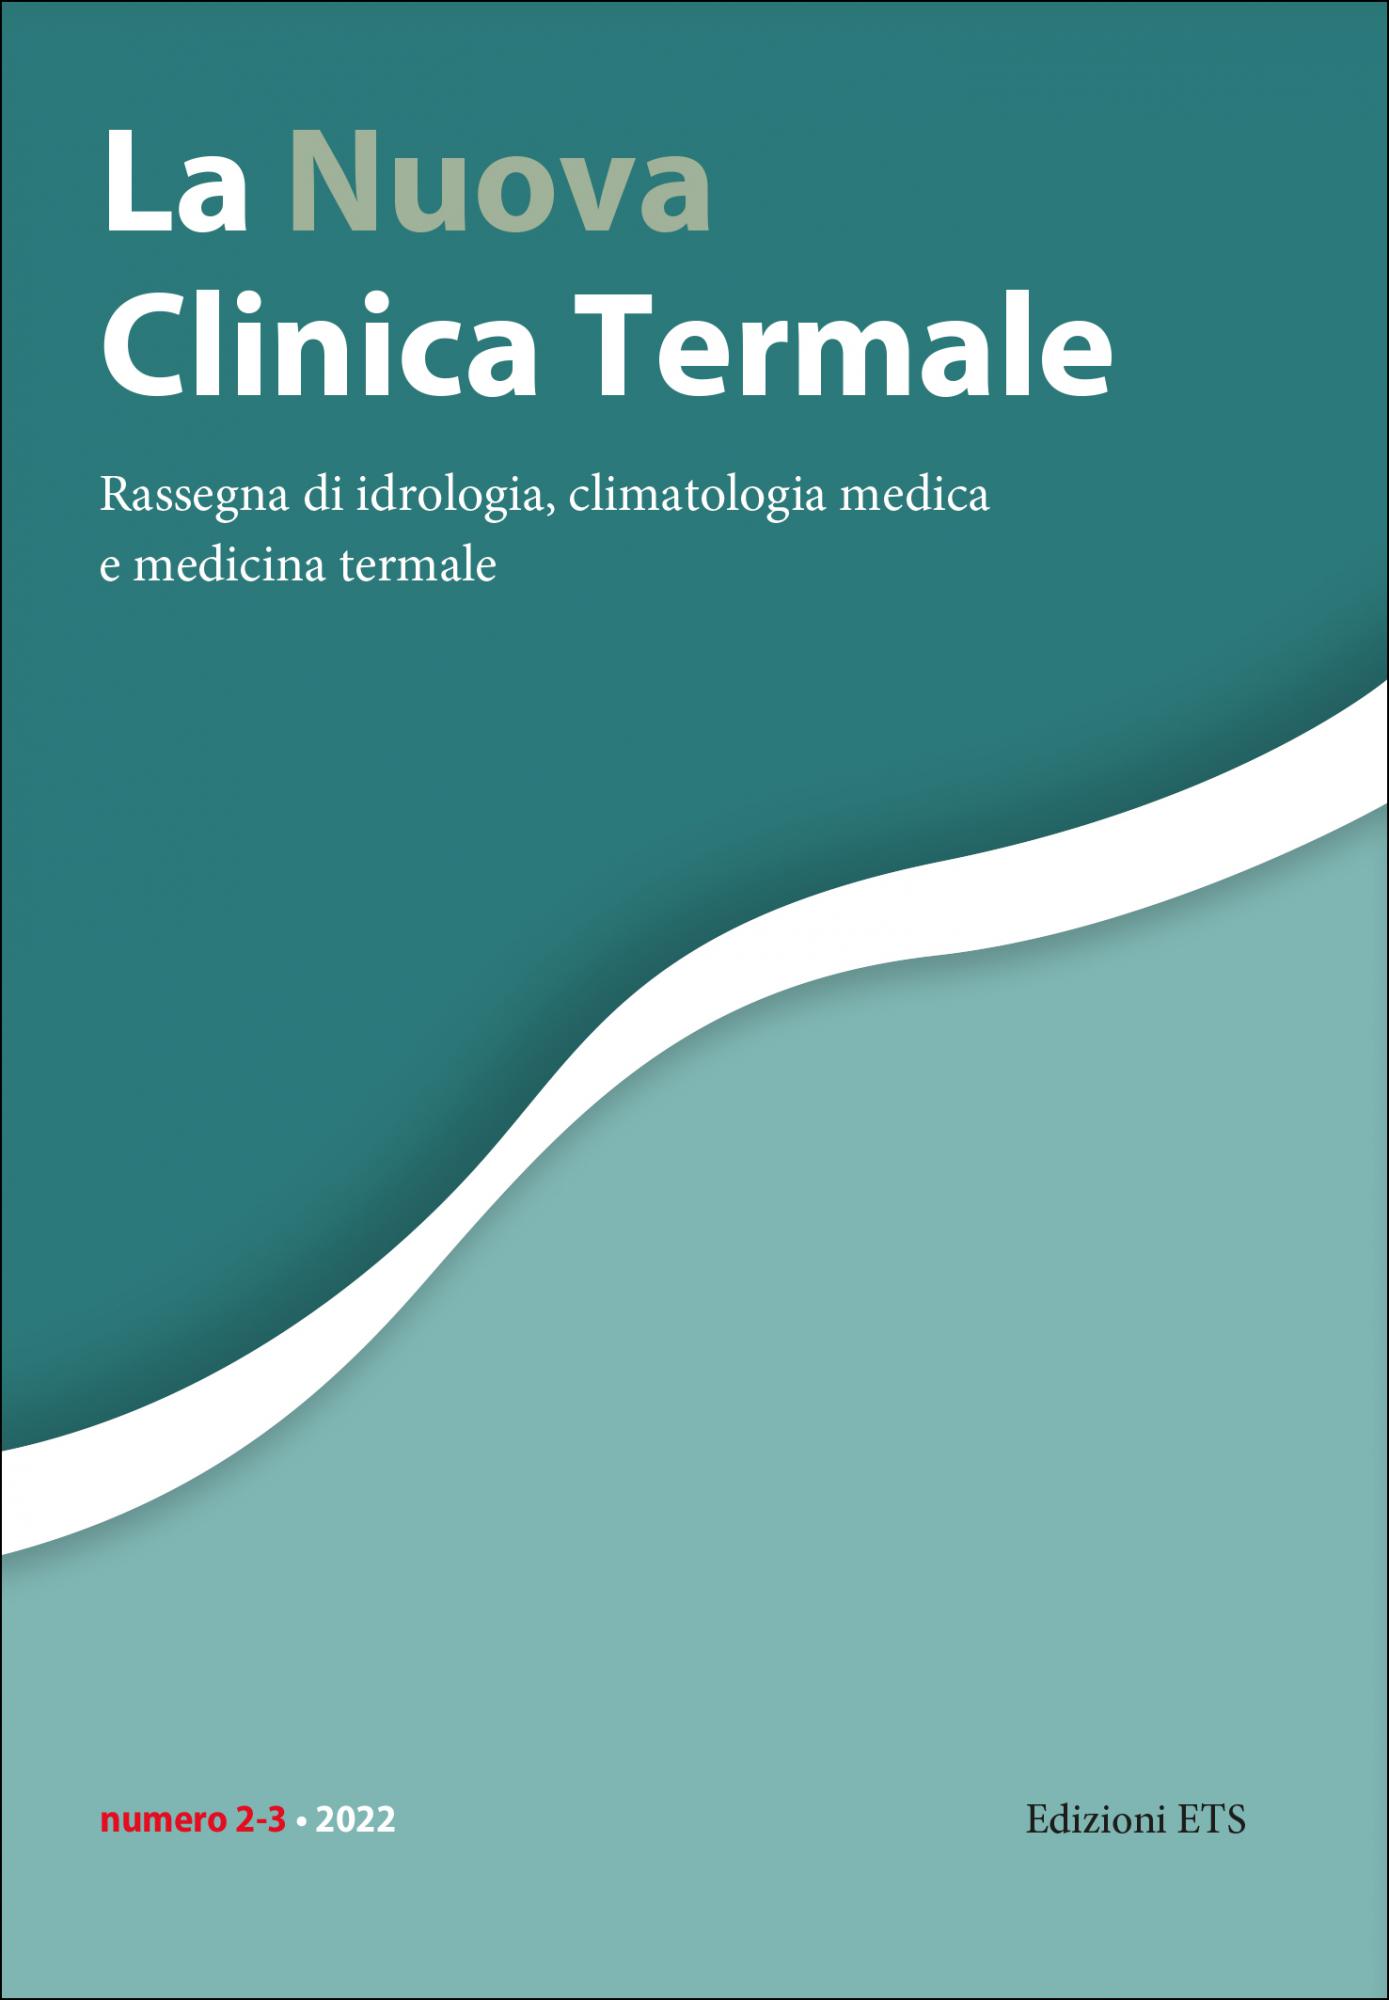 La Nuova Clinica Termale, 2-3/2022.Rassegna di idrologia, climatologia medica e medicina termale